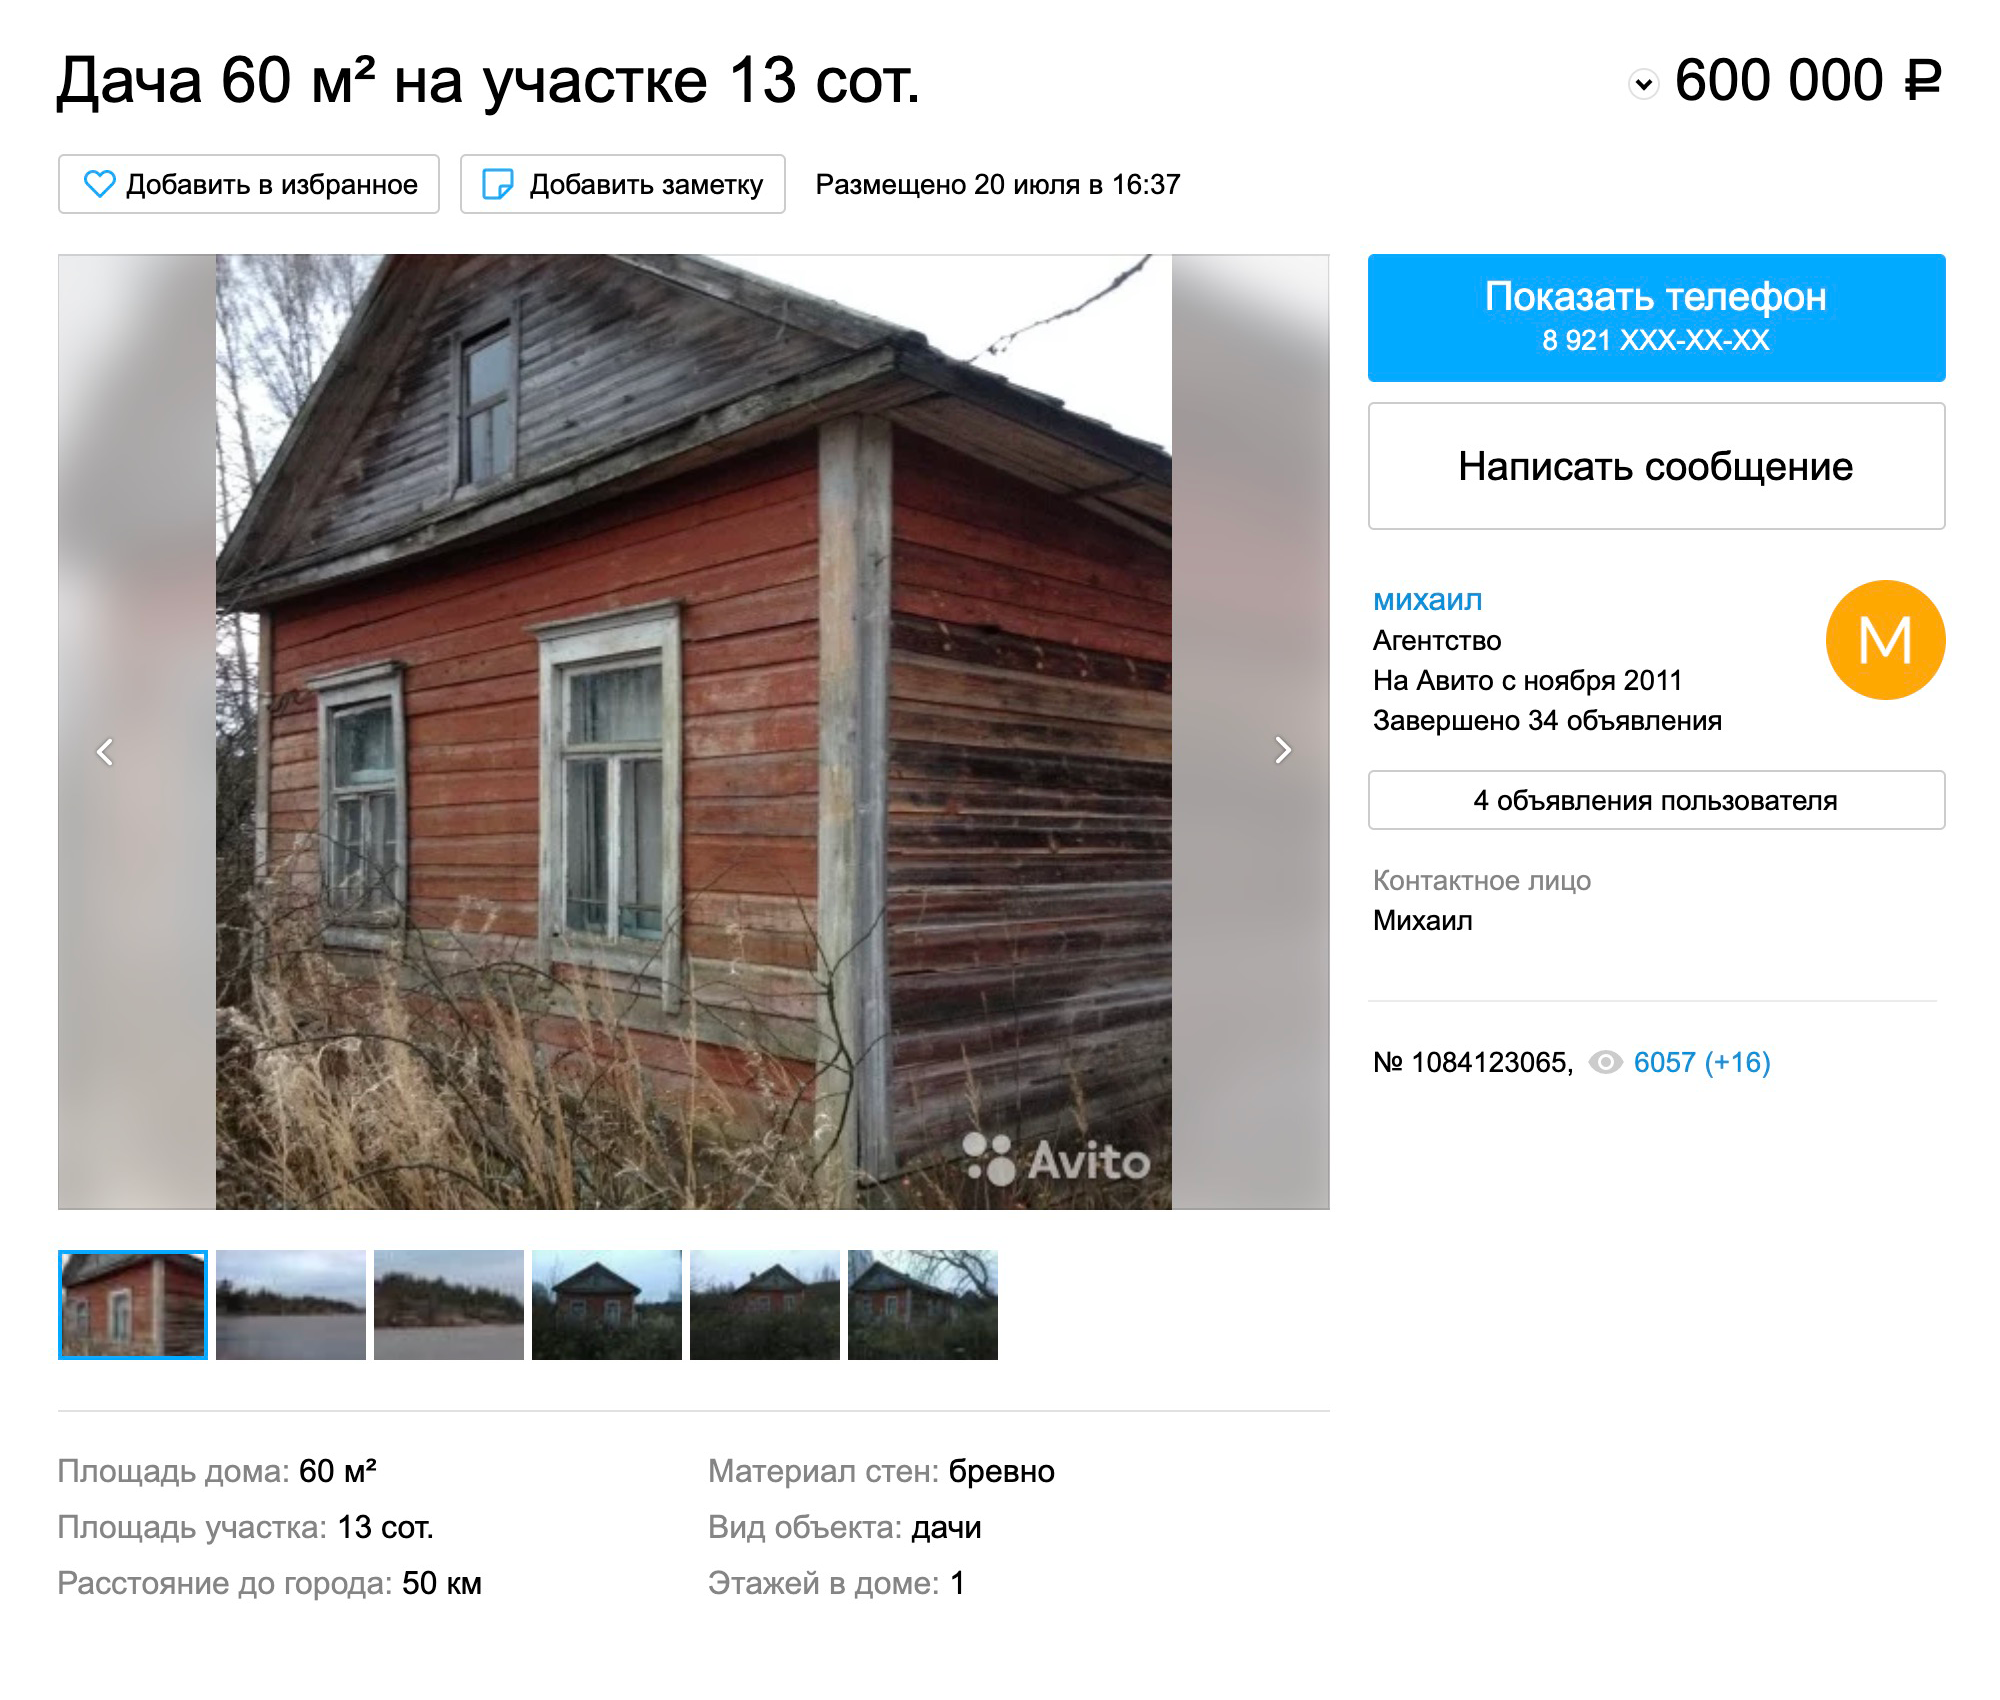 «Старый уютный домик» продают до сих пор. Правда, цену снизили еще на 150 тысяч